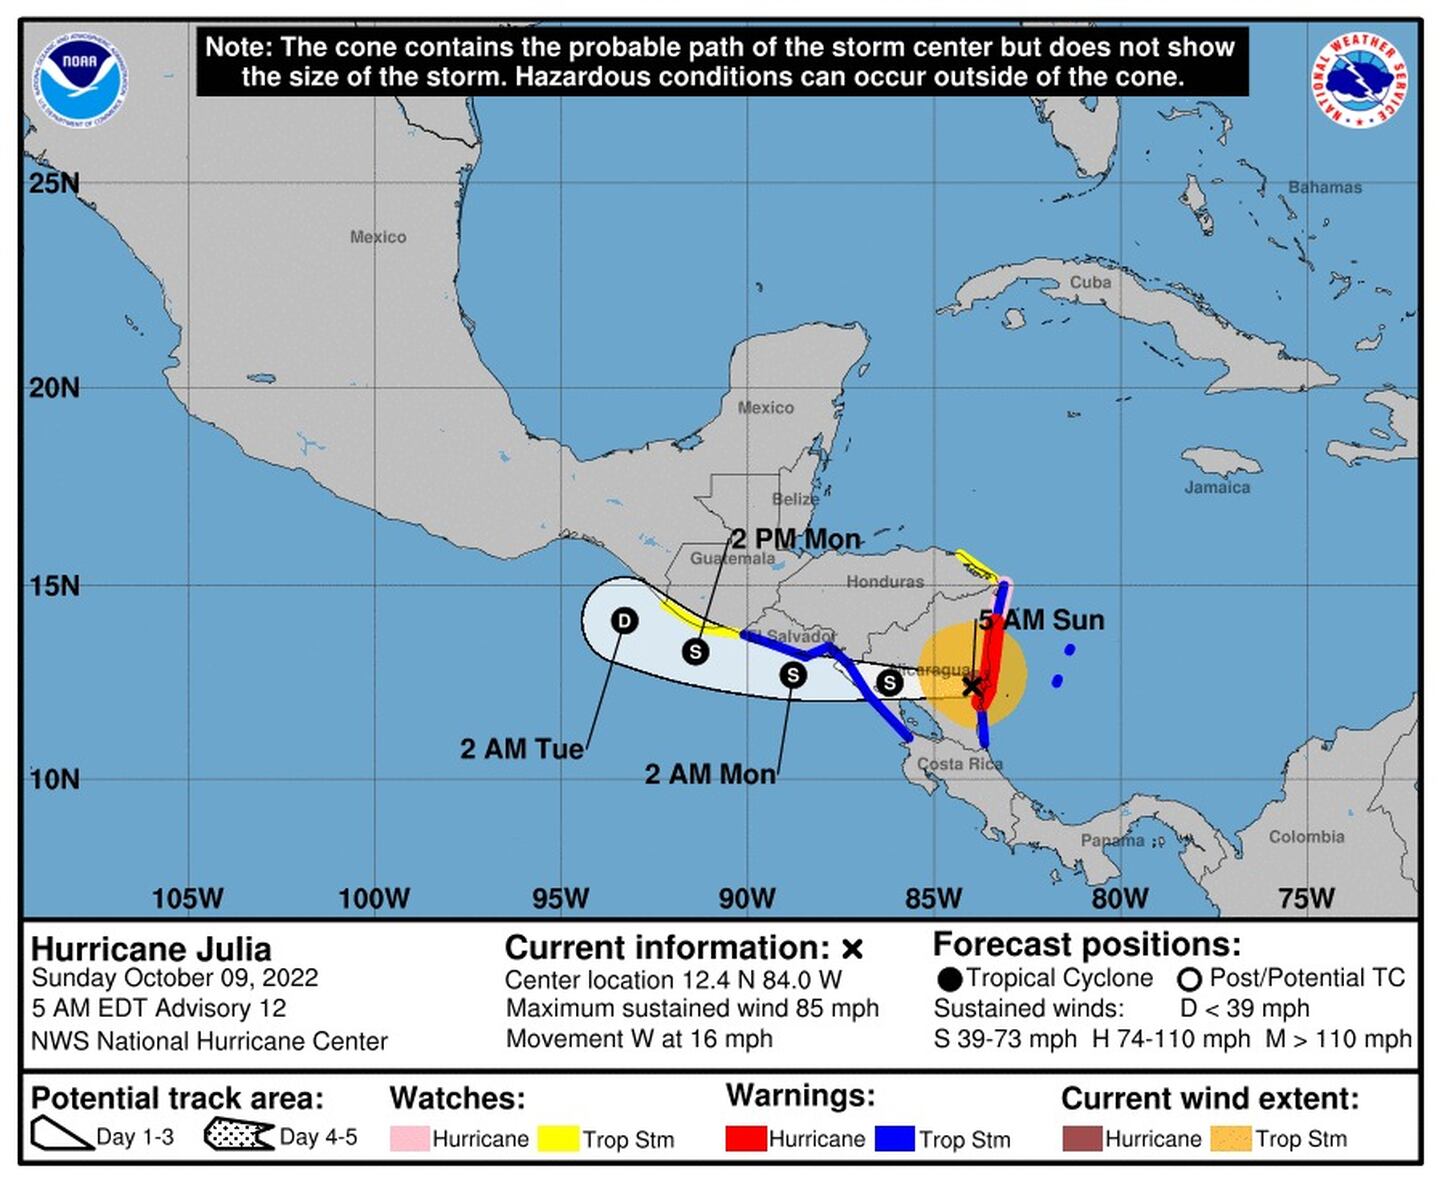 Estimación de la trayectoria del huracán Julia, según la proyección de la mañana del domingo 9 de octubre. En las próximas horas volvería a degradarse como tormenta tropical. Fuente: Centro Nacional de Huracanes de Estados Unidosdfd